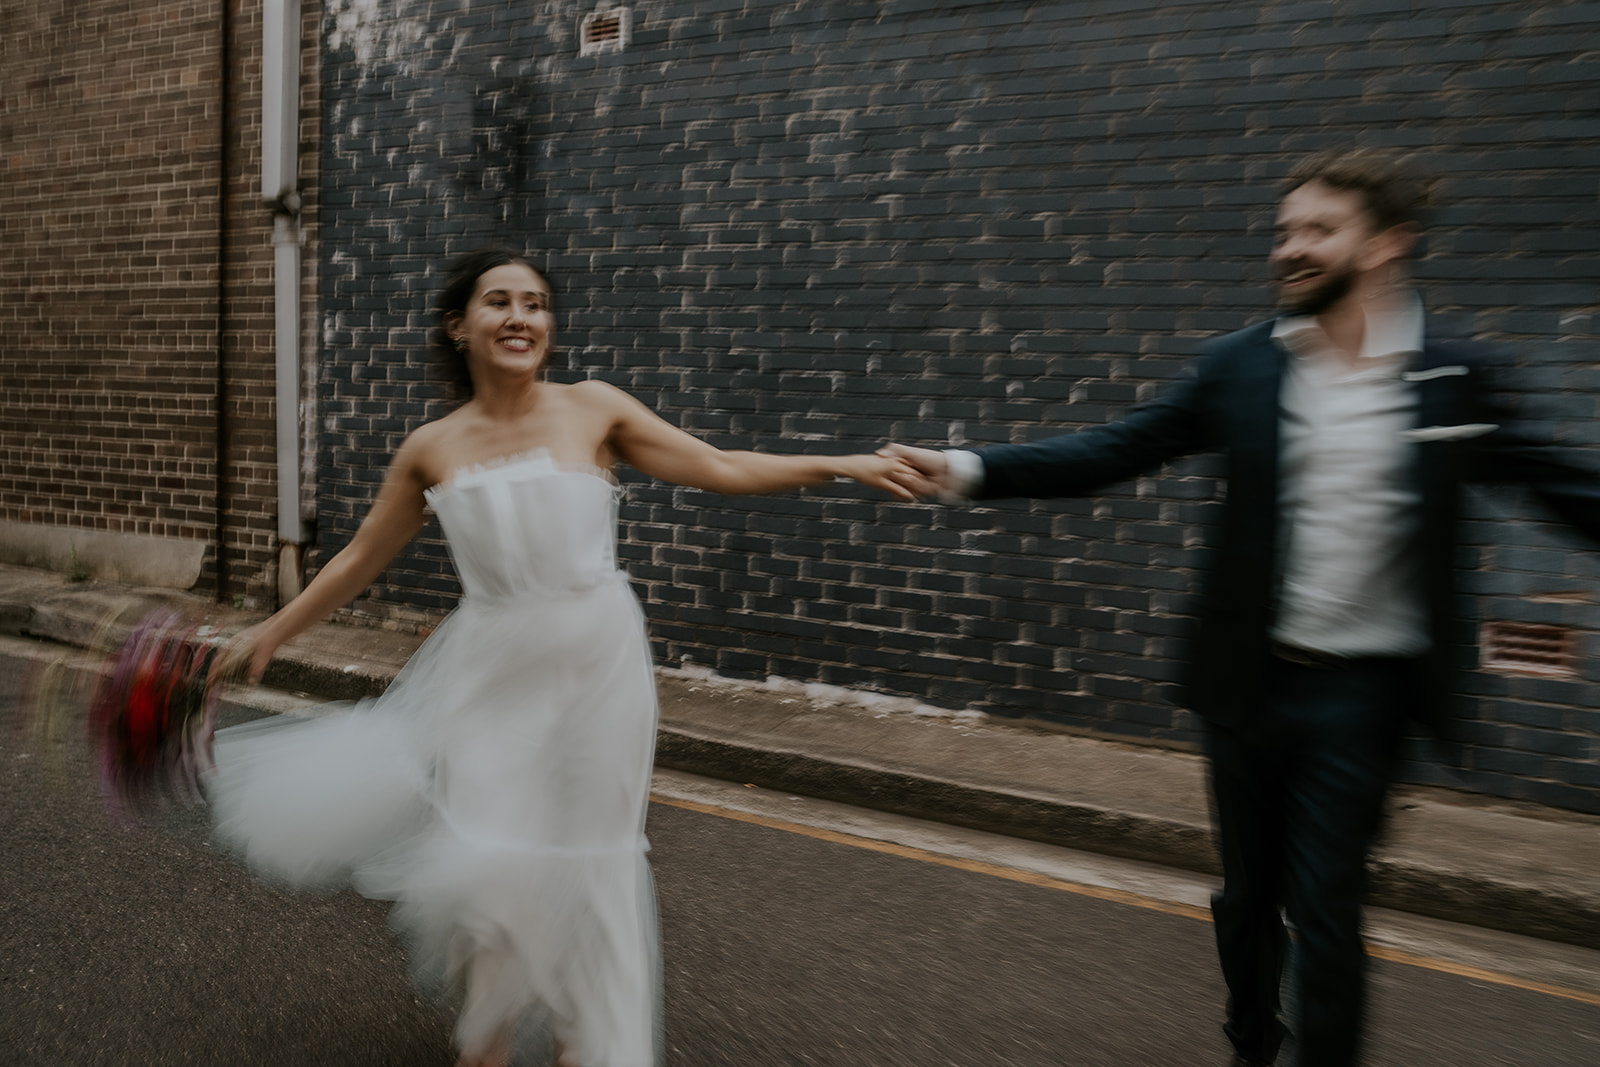 Scott Surplice portrait of groom spinning bride around motion blur